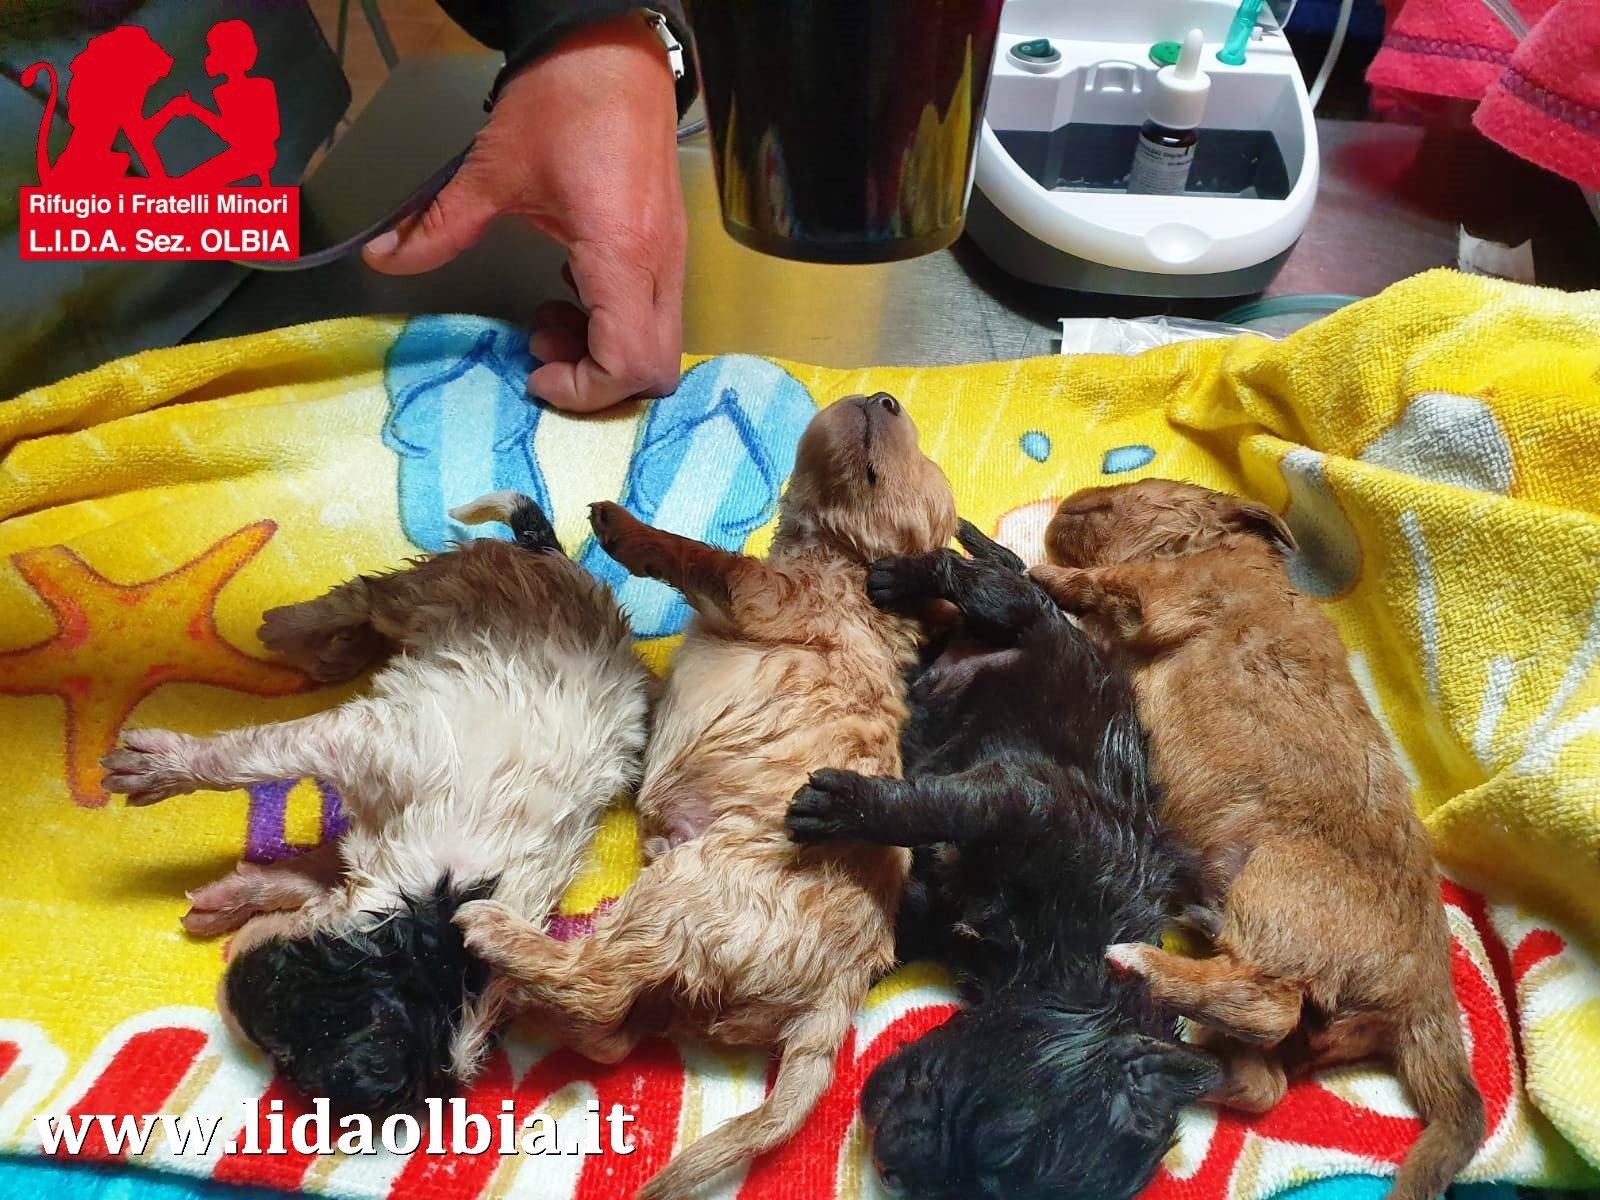 Orrore a Olbia: chiudono cuccioli in busta e li lanciano nel canale